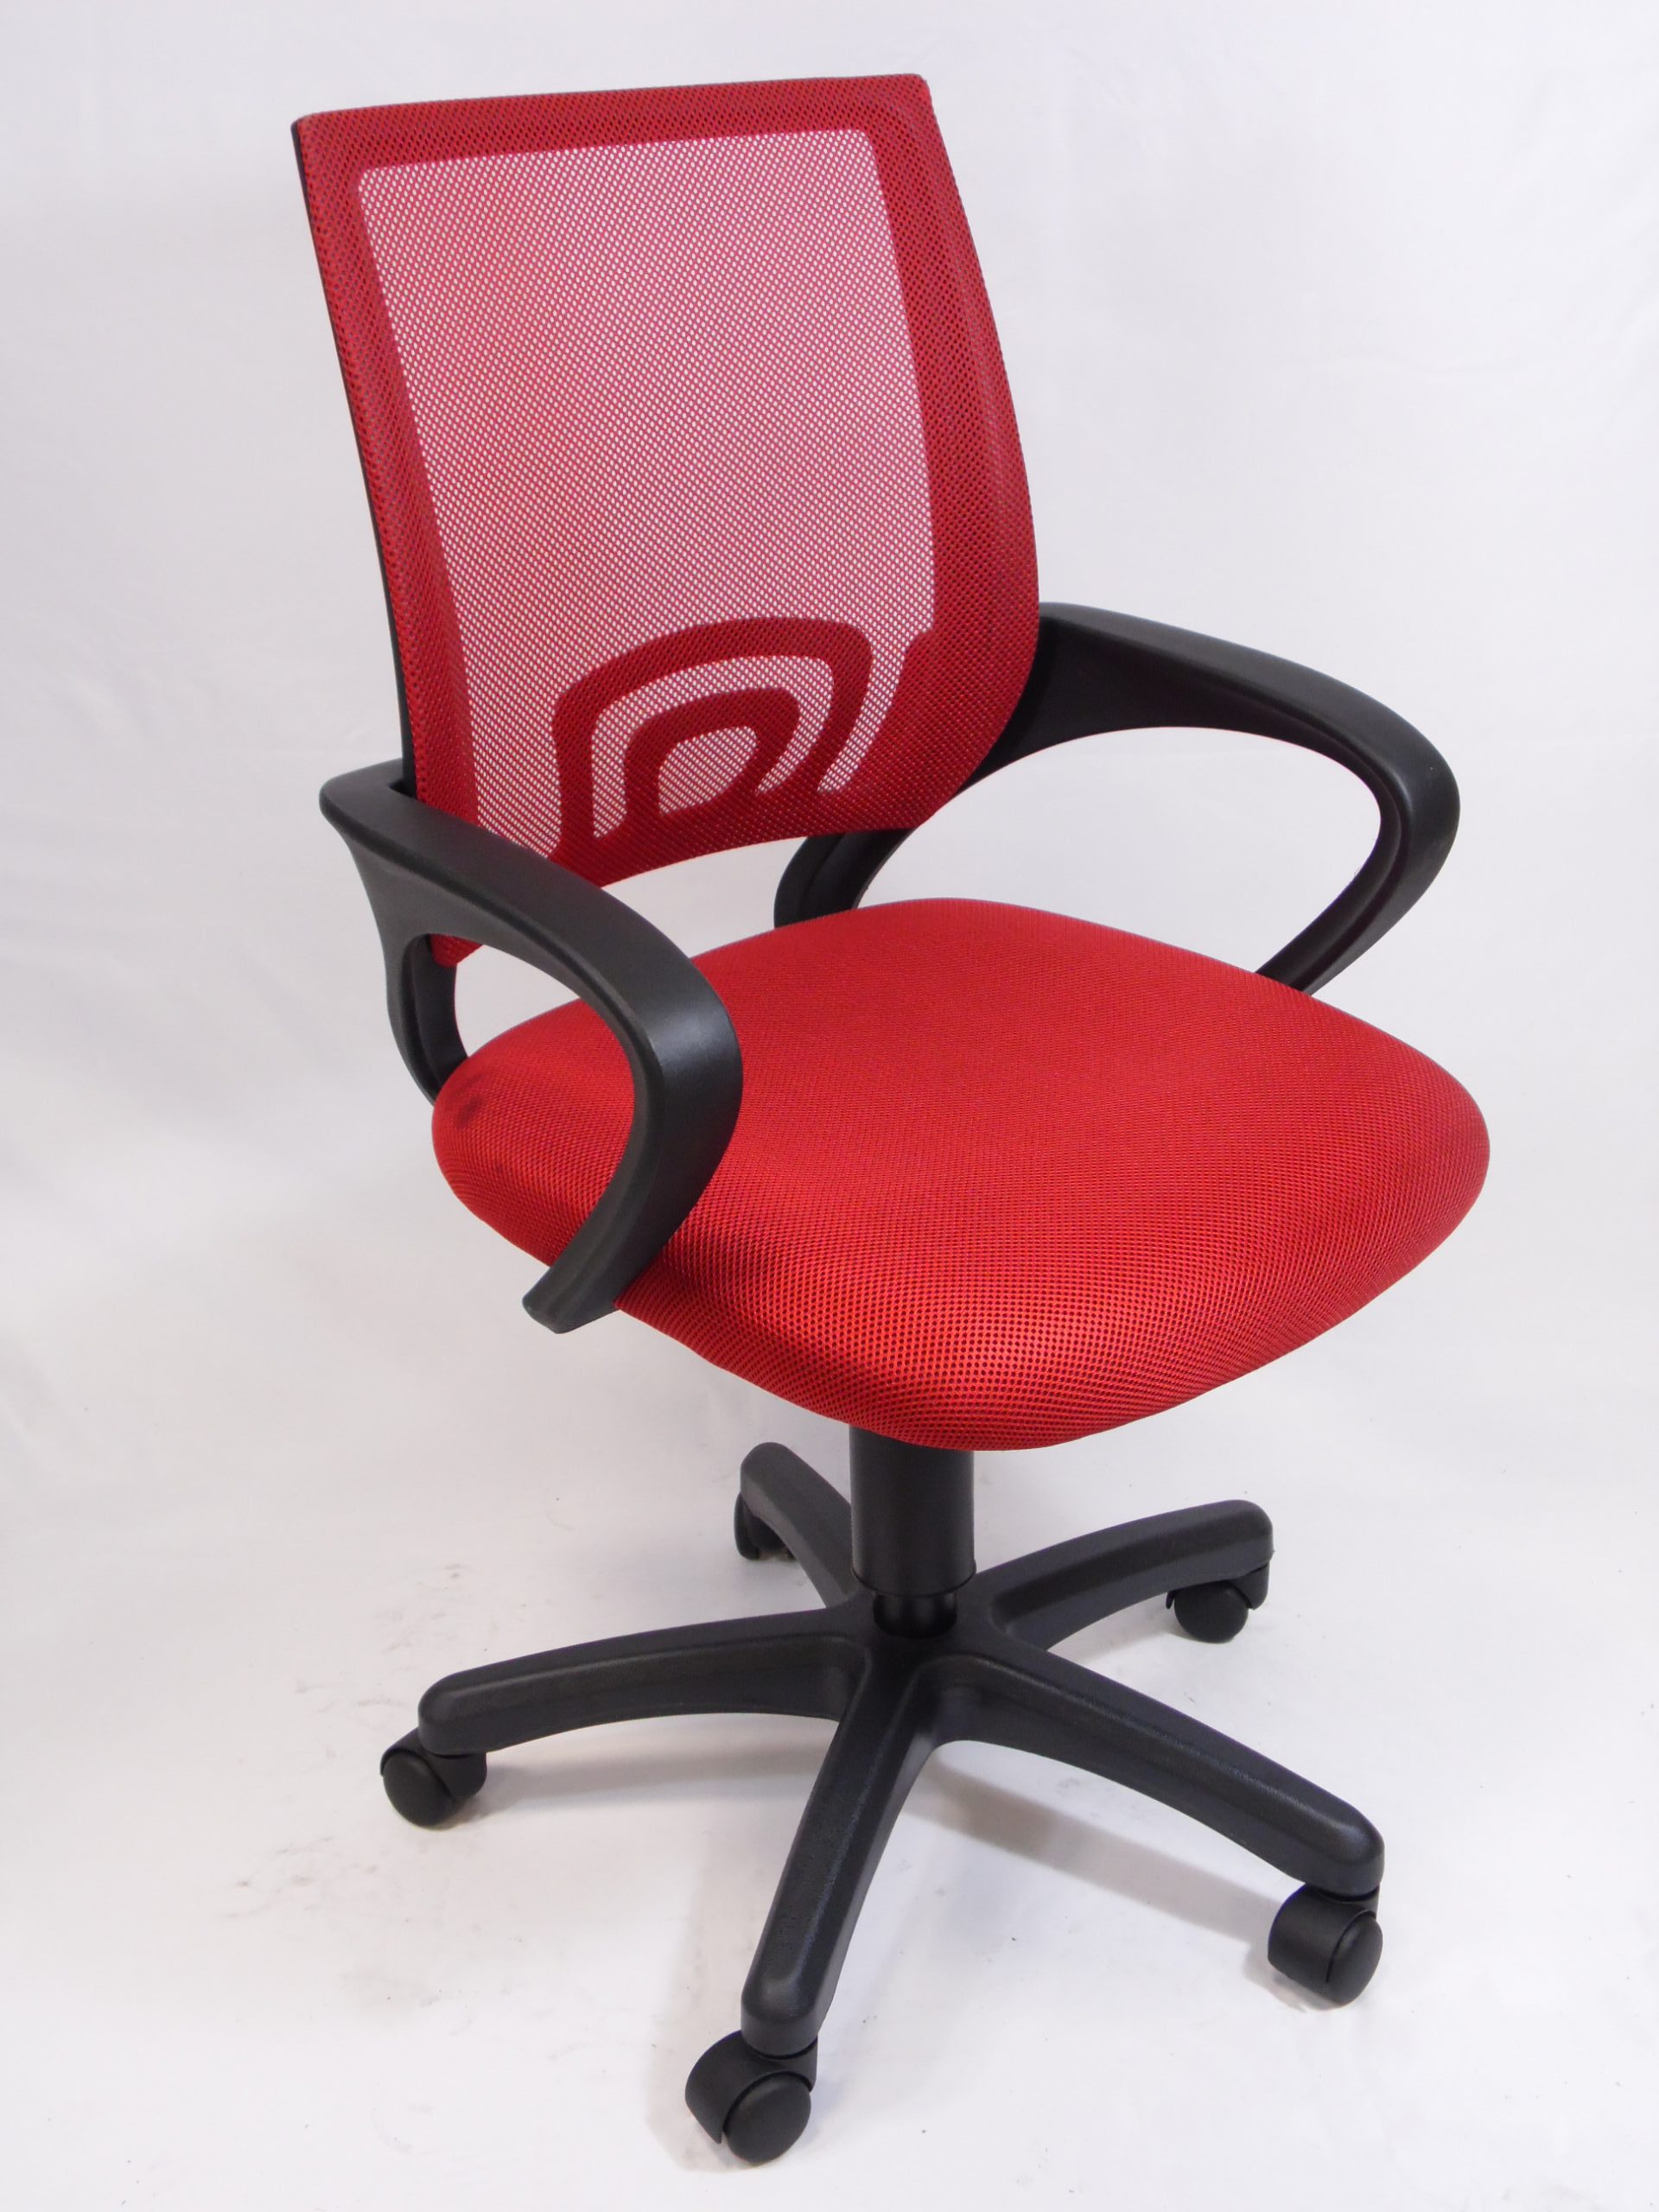 sedia per pc Dimensioni: h 99 cm x 60cm , h sedile 54cm x d sedile 57 cm; Materiale: plastica e tessuto color rosso